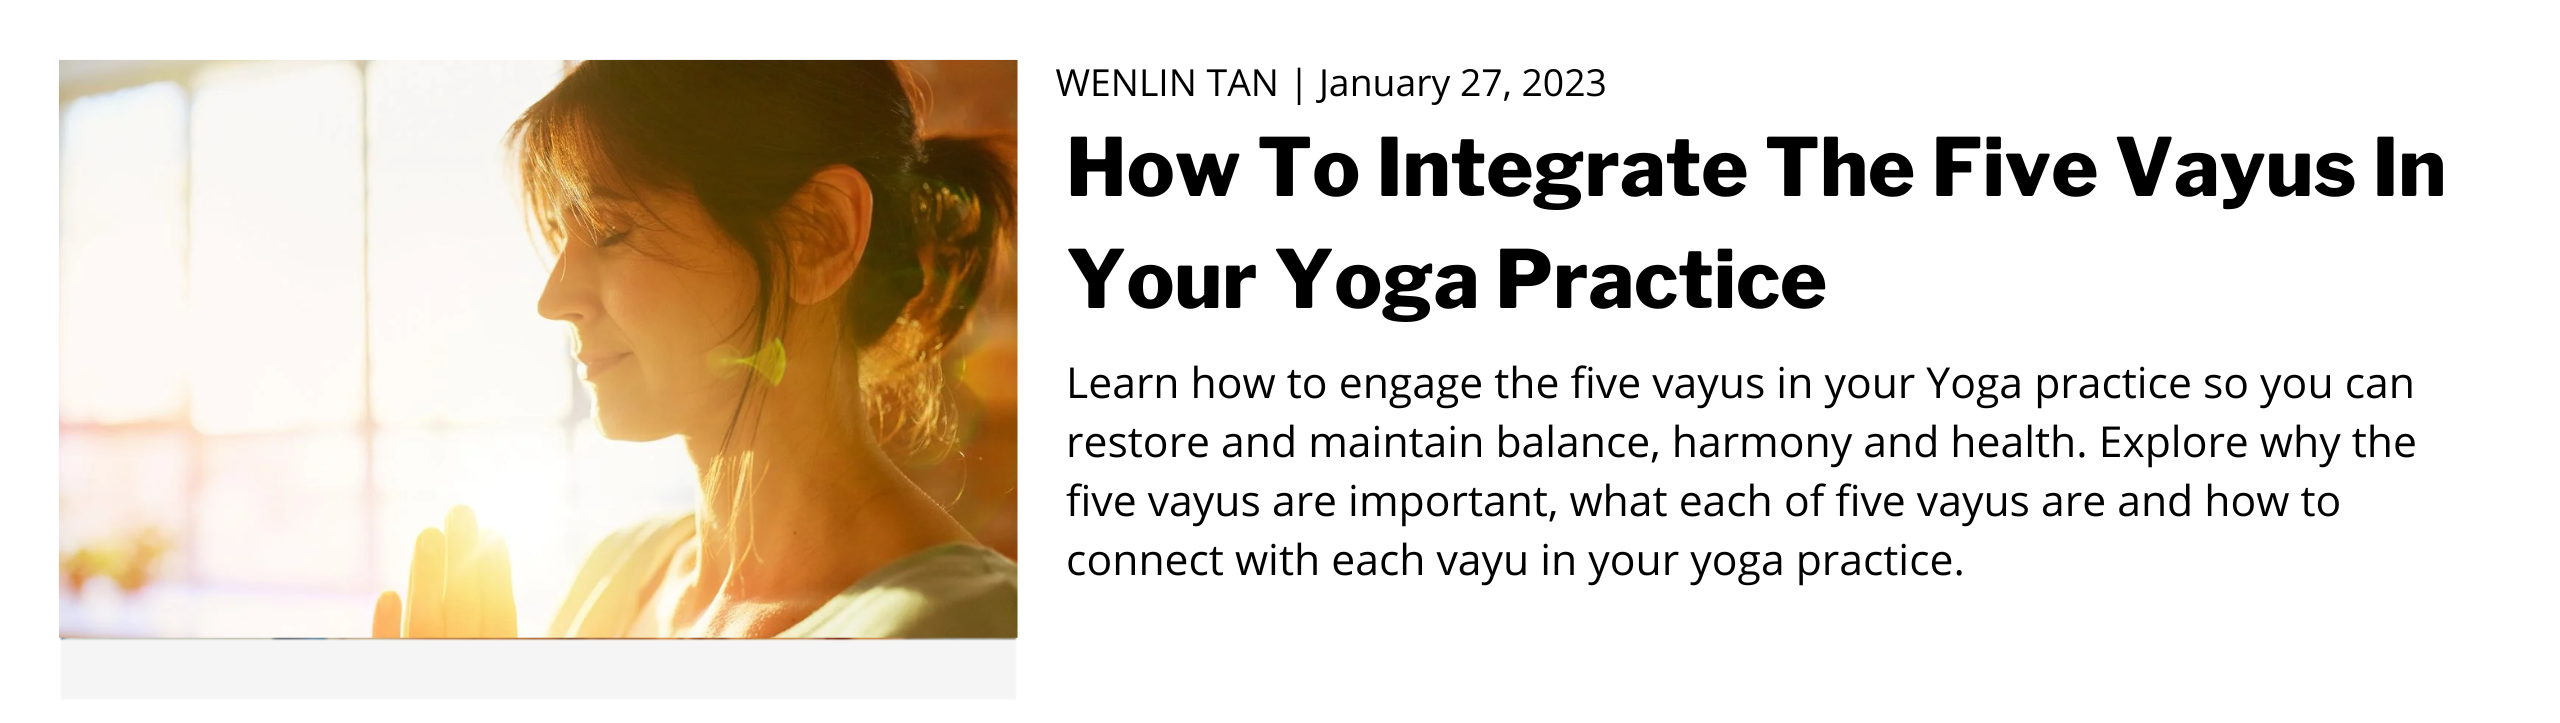 Five Vayus of Yoga